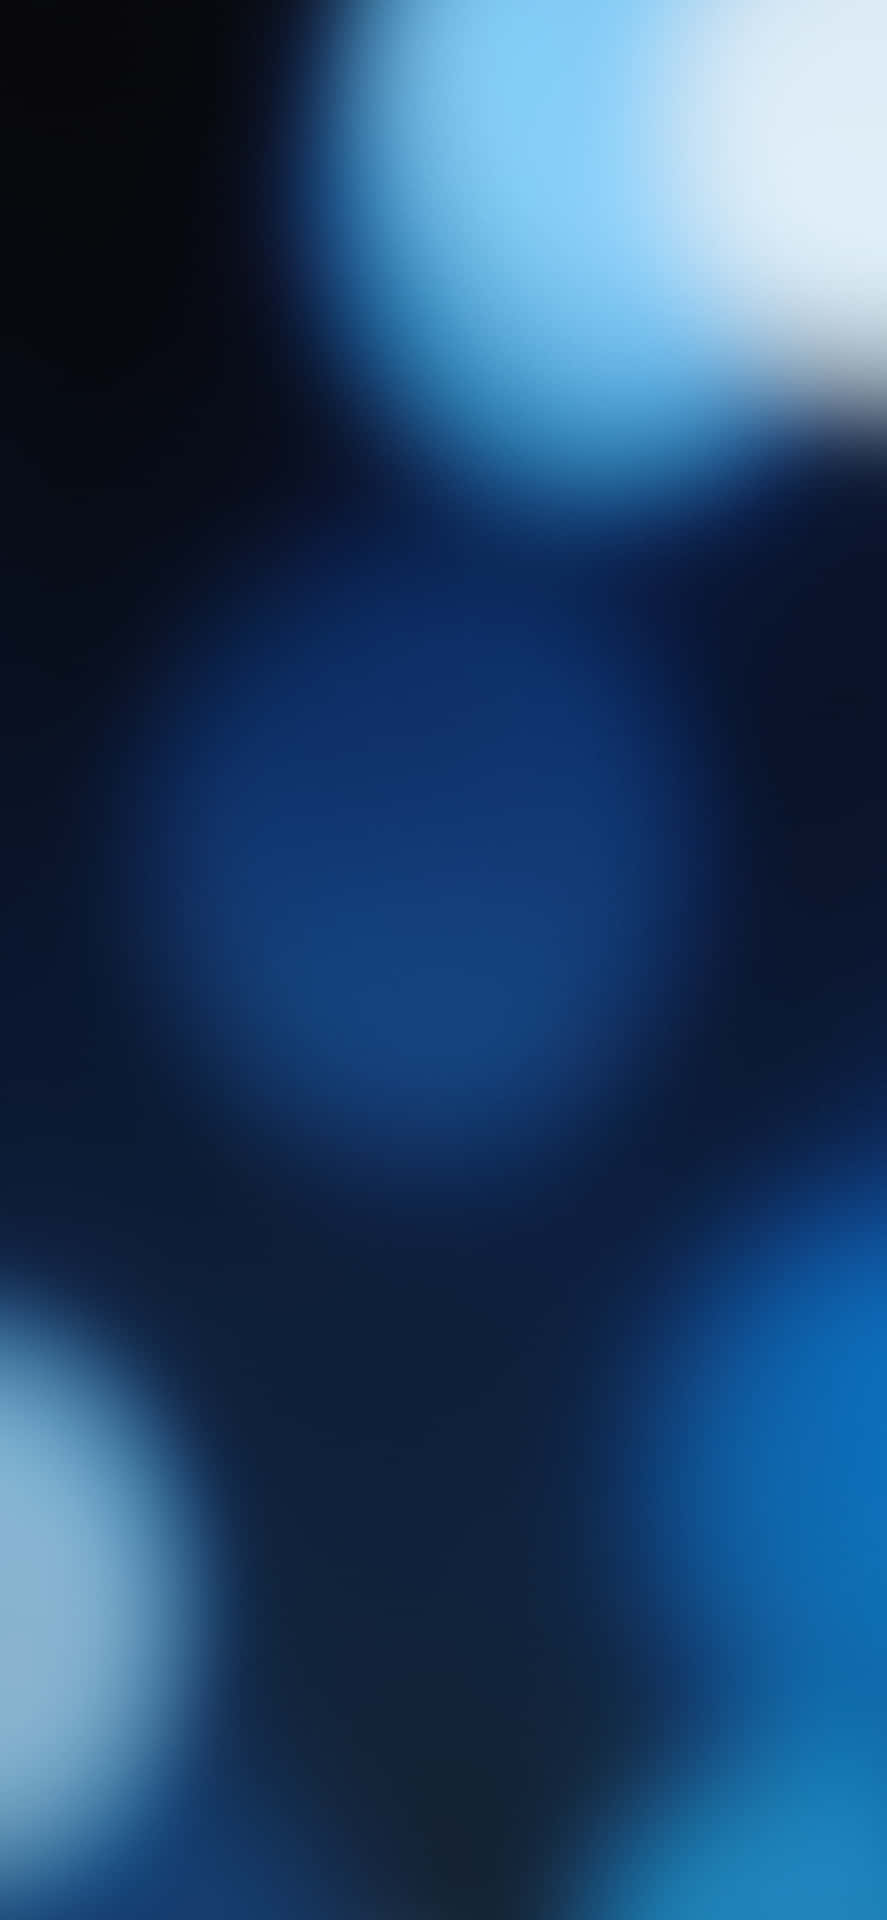 Efectode Desenfoque Azul De Fondo De Pantalla Del Iphone Xr. Fondo de pantalla